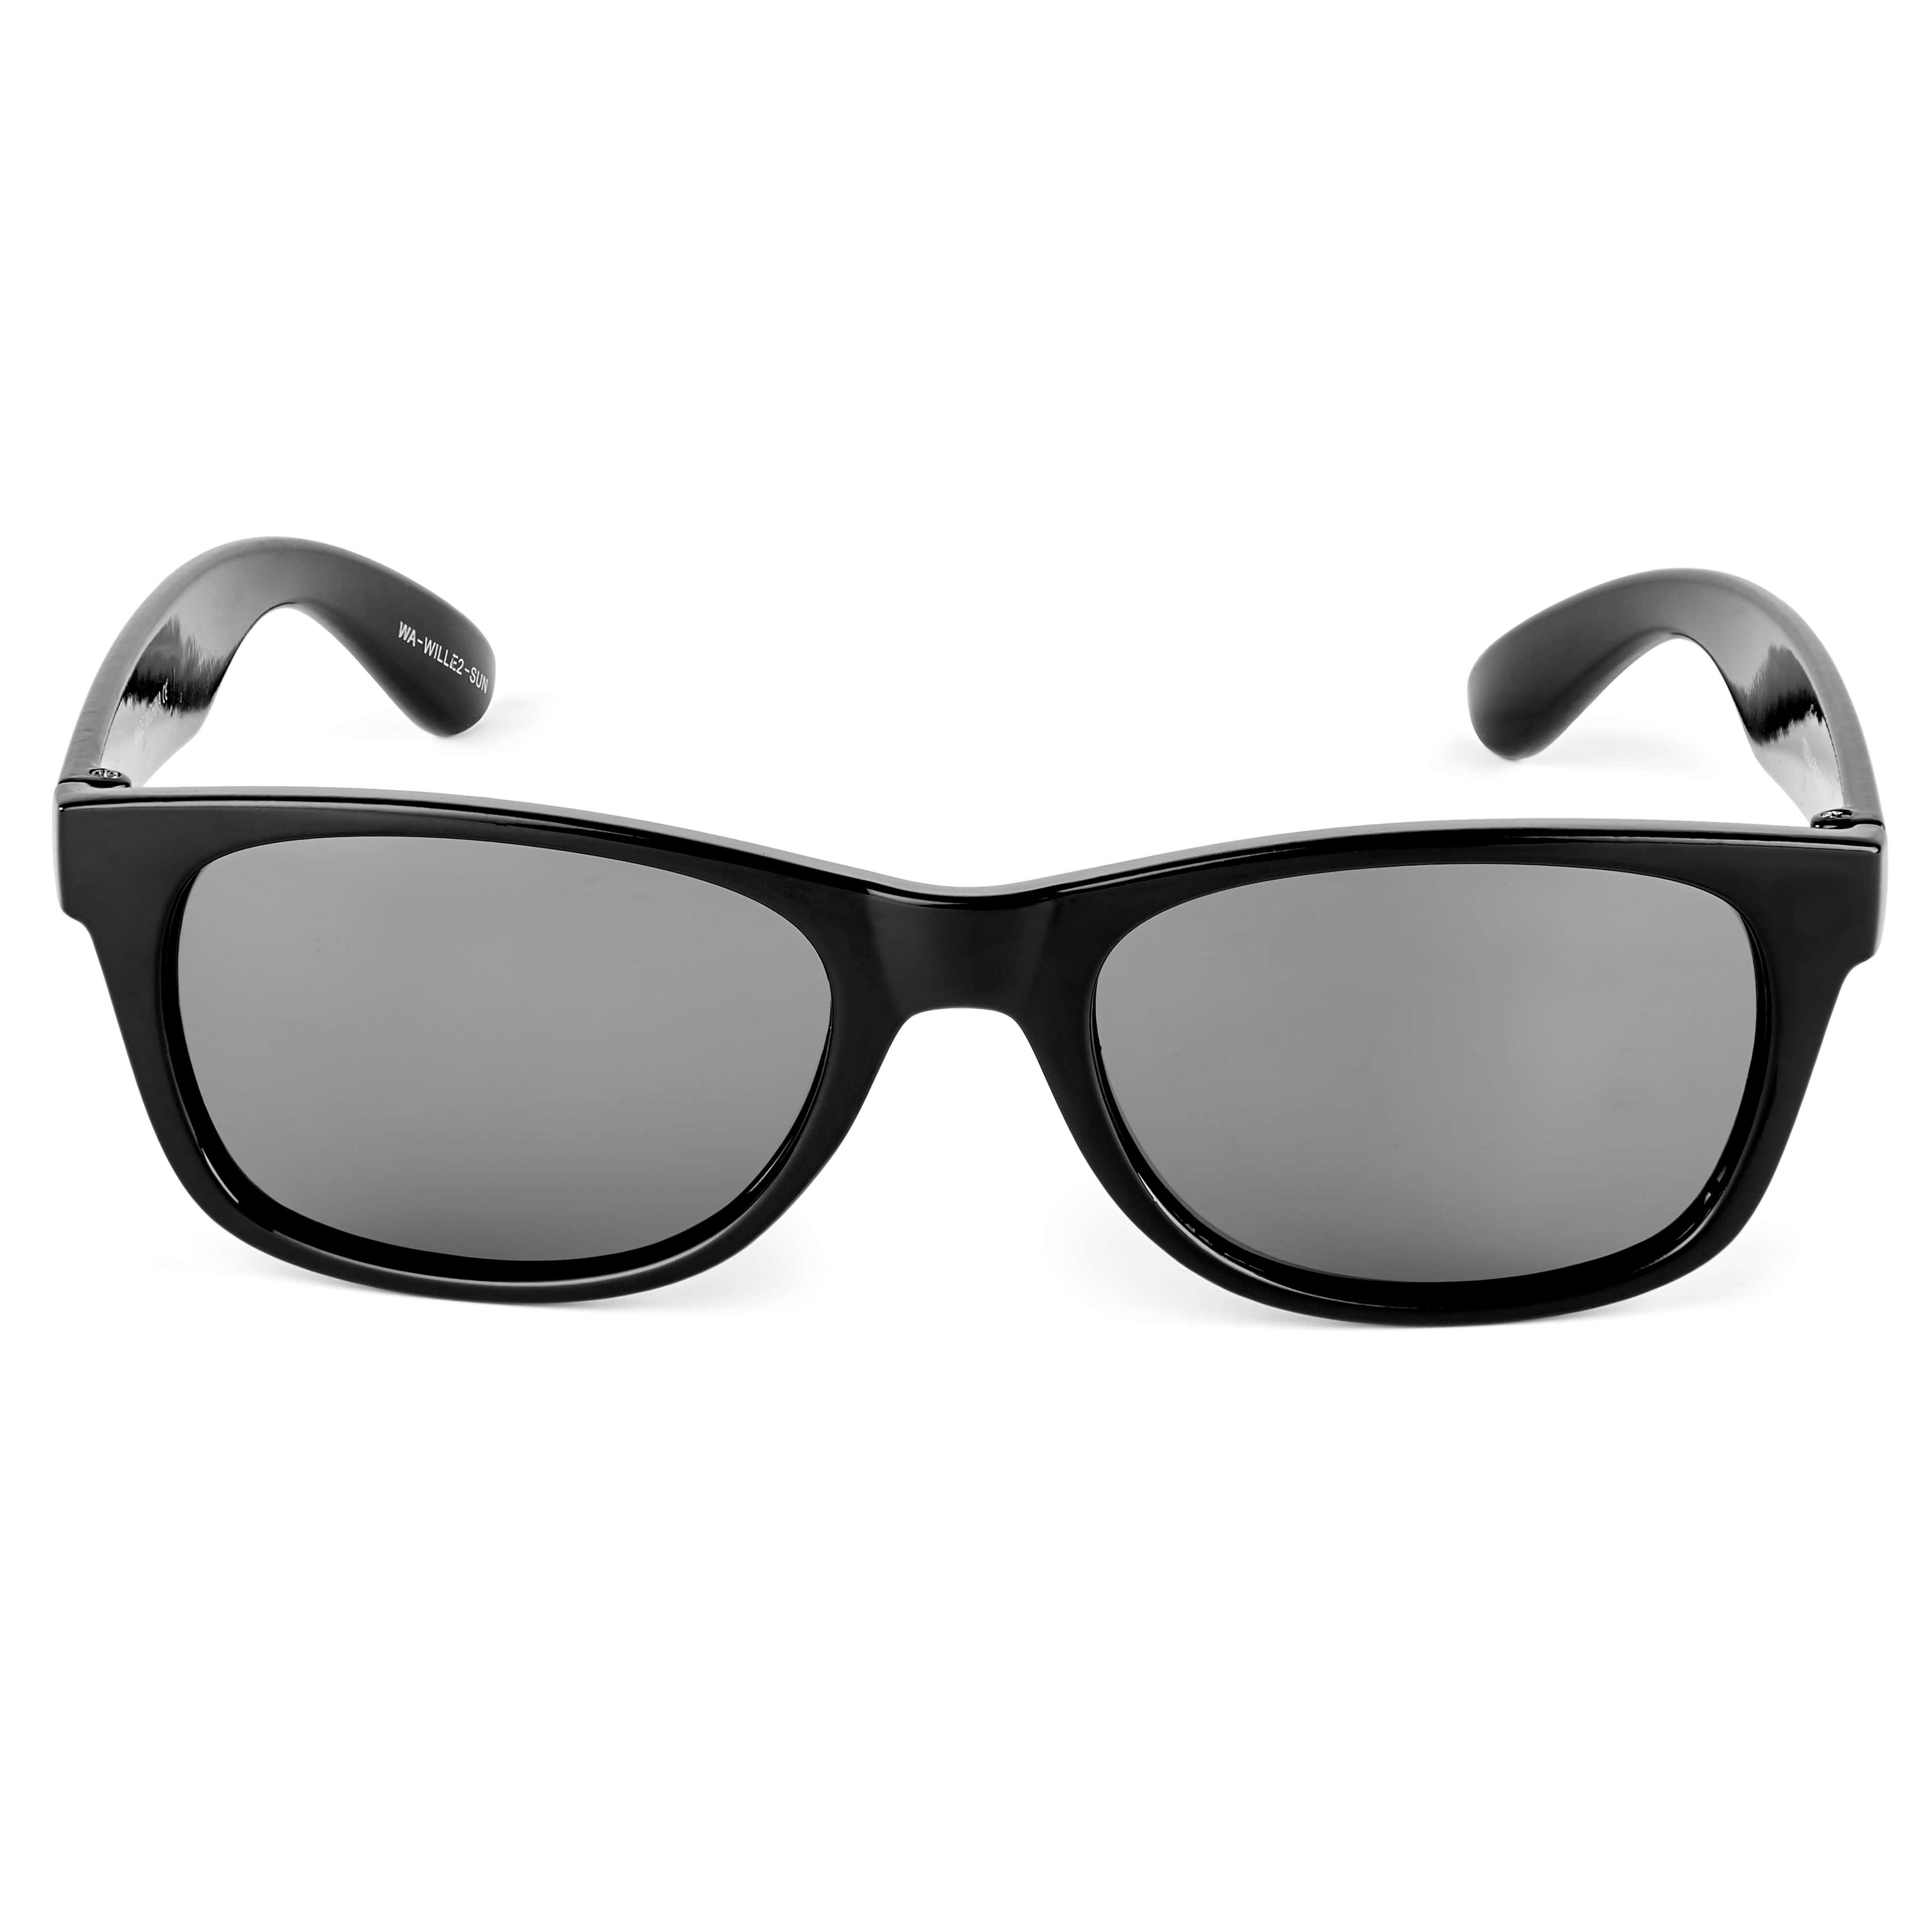 Wille Black Vista Sunglasses - 2 - hover gallery